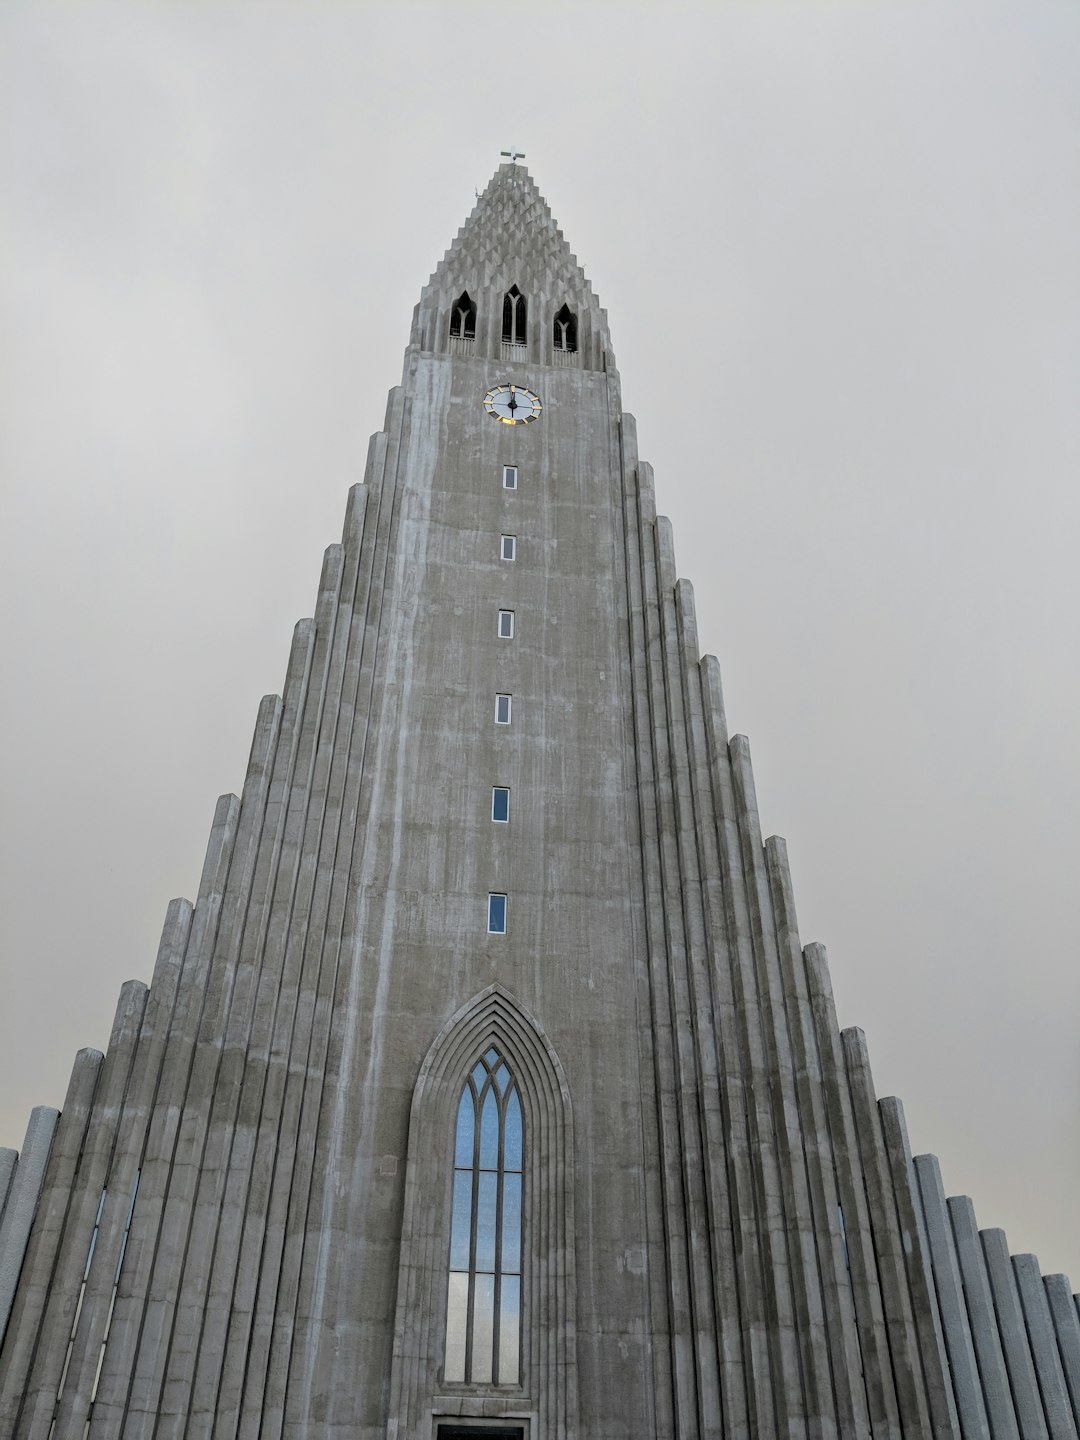 Landmark photo spot Skólavörðustígur 46 Harpa